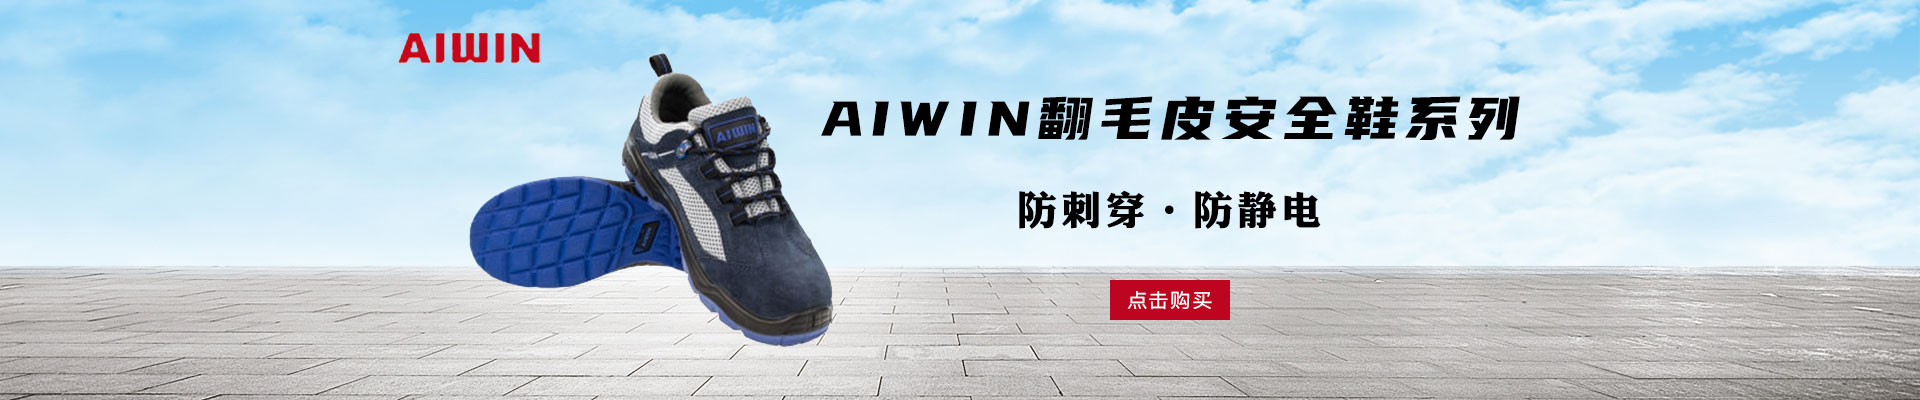 AIWIN|足部防护